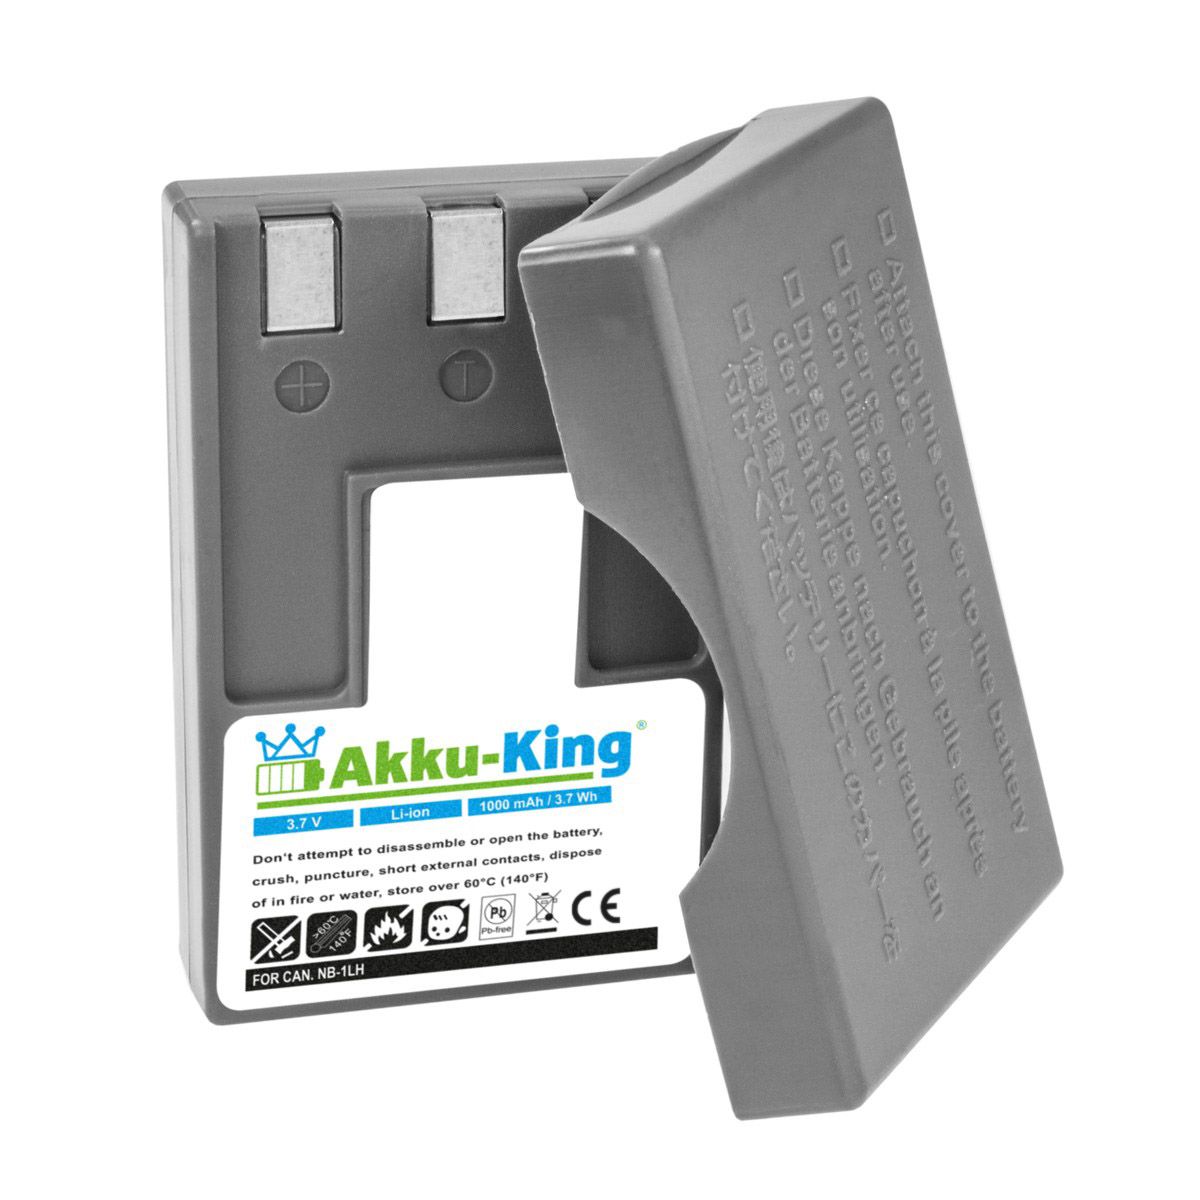 AKKU-KING Akku kompatibel mit 3.7 Li-Ion 1000mAh Kamera-Akku, Canon Volt, NB-1LH